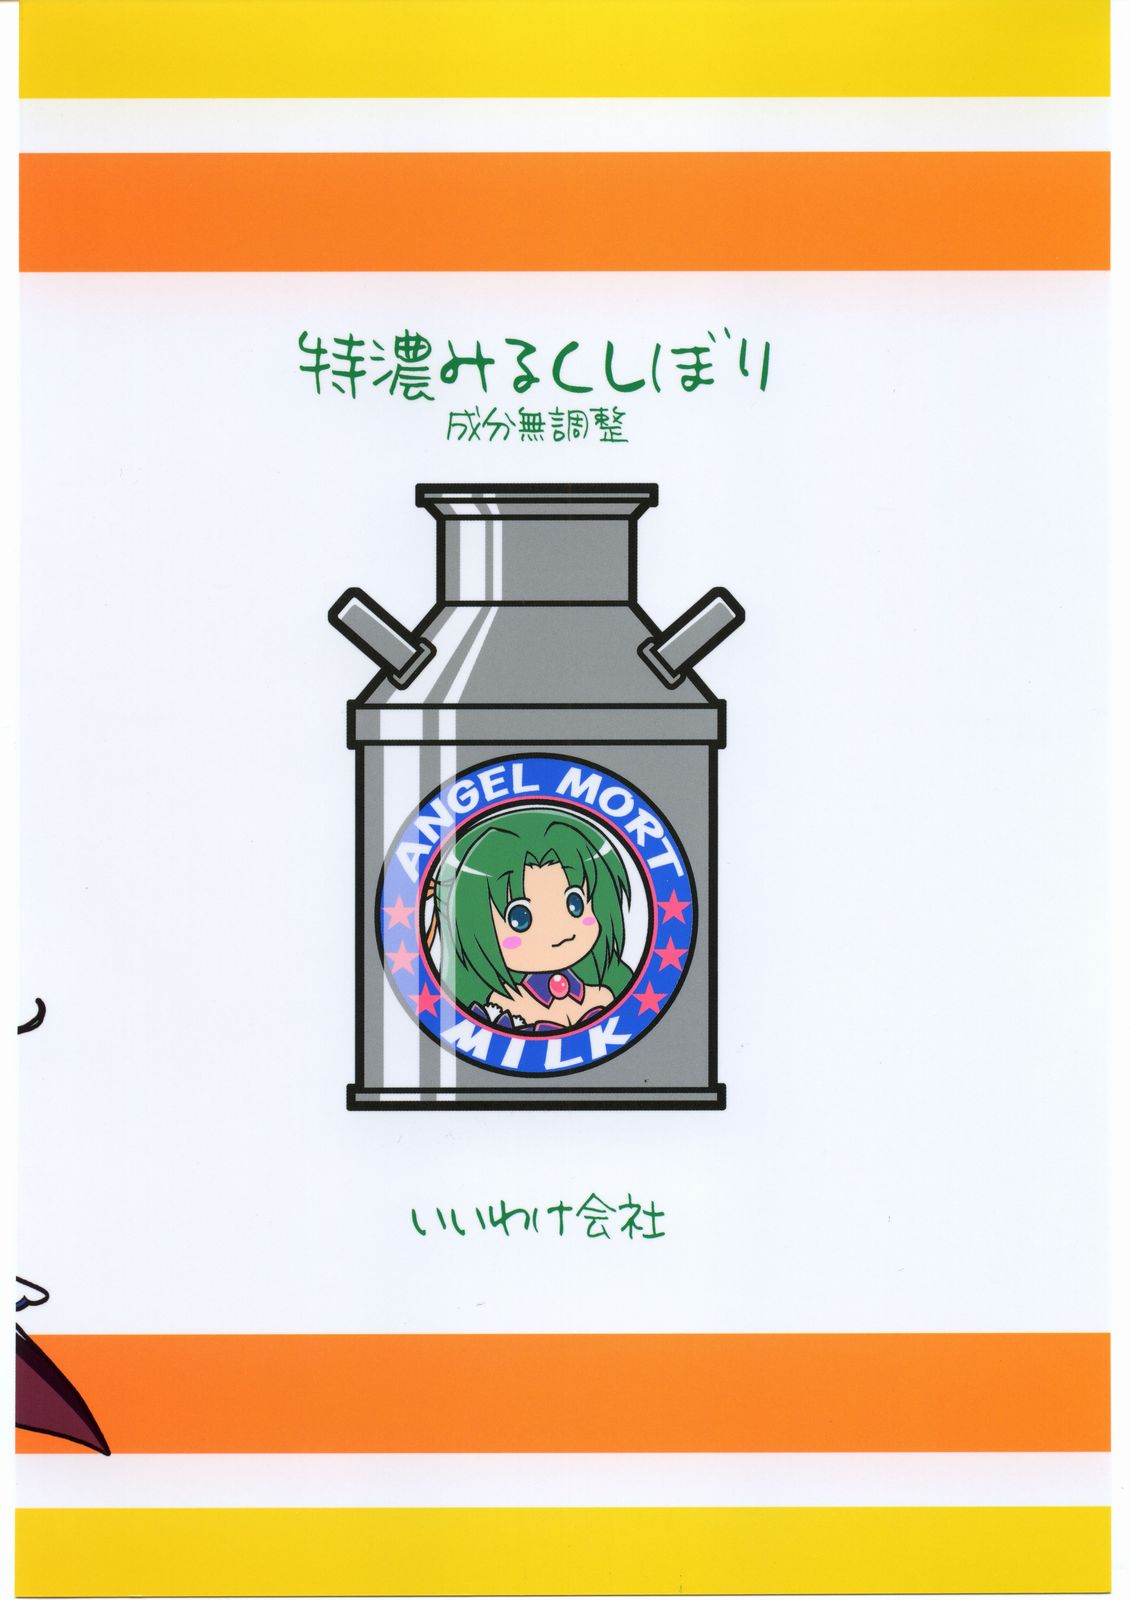 [IIWAKE-GAISYA (Shigemiya Kyouhei)] Tokunou Milk Shibori (Higurashi no naku koro ni [When They Cry - Higurashi]) [C68 Ad] [いいわけ会社 (樹宮匡平)] 特濃みるくしぼり (ひぐらしのなく頃に) [C68広告]